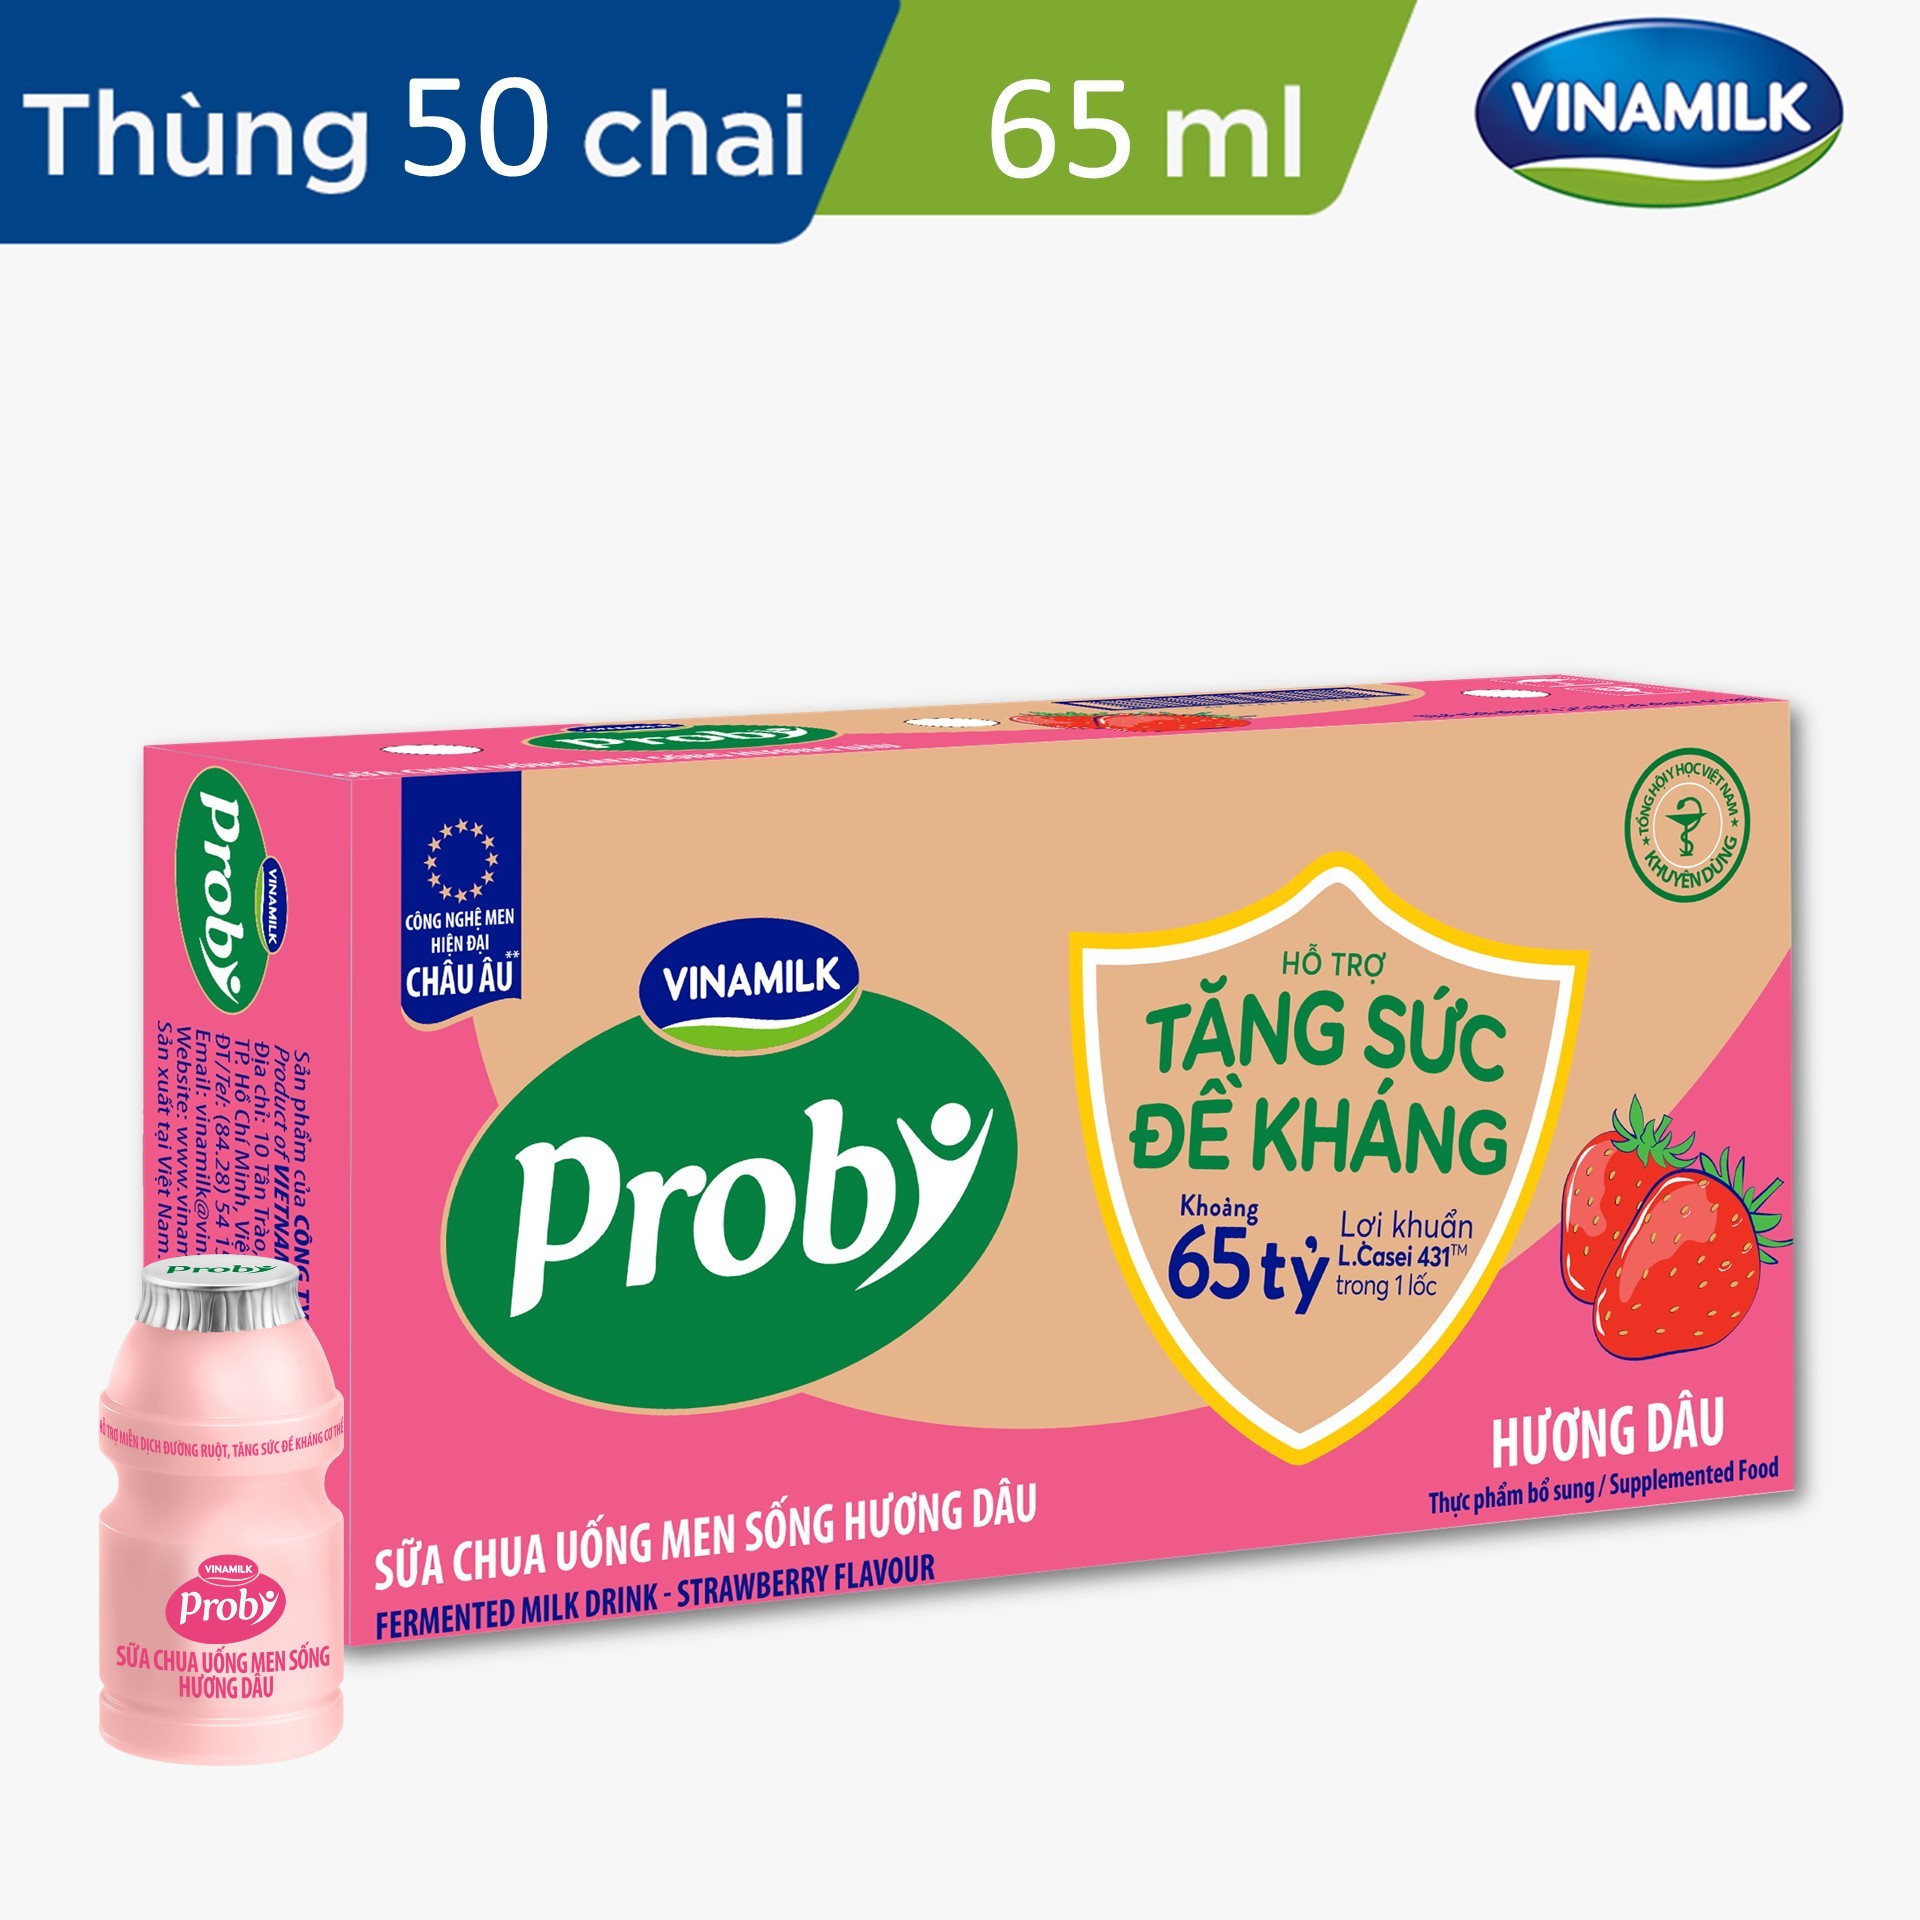 Thùng Sữa chua uống Probi Hương Dâu chai 65ml - 50 chai/Thùng Yogurt